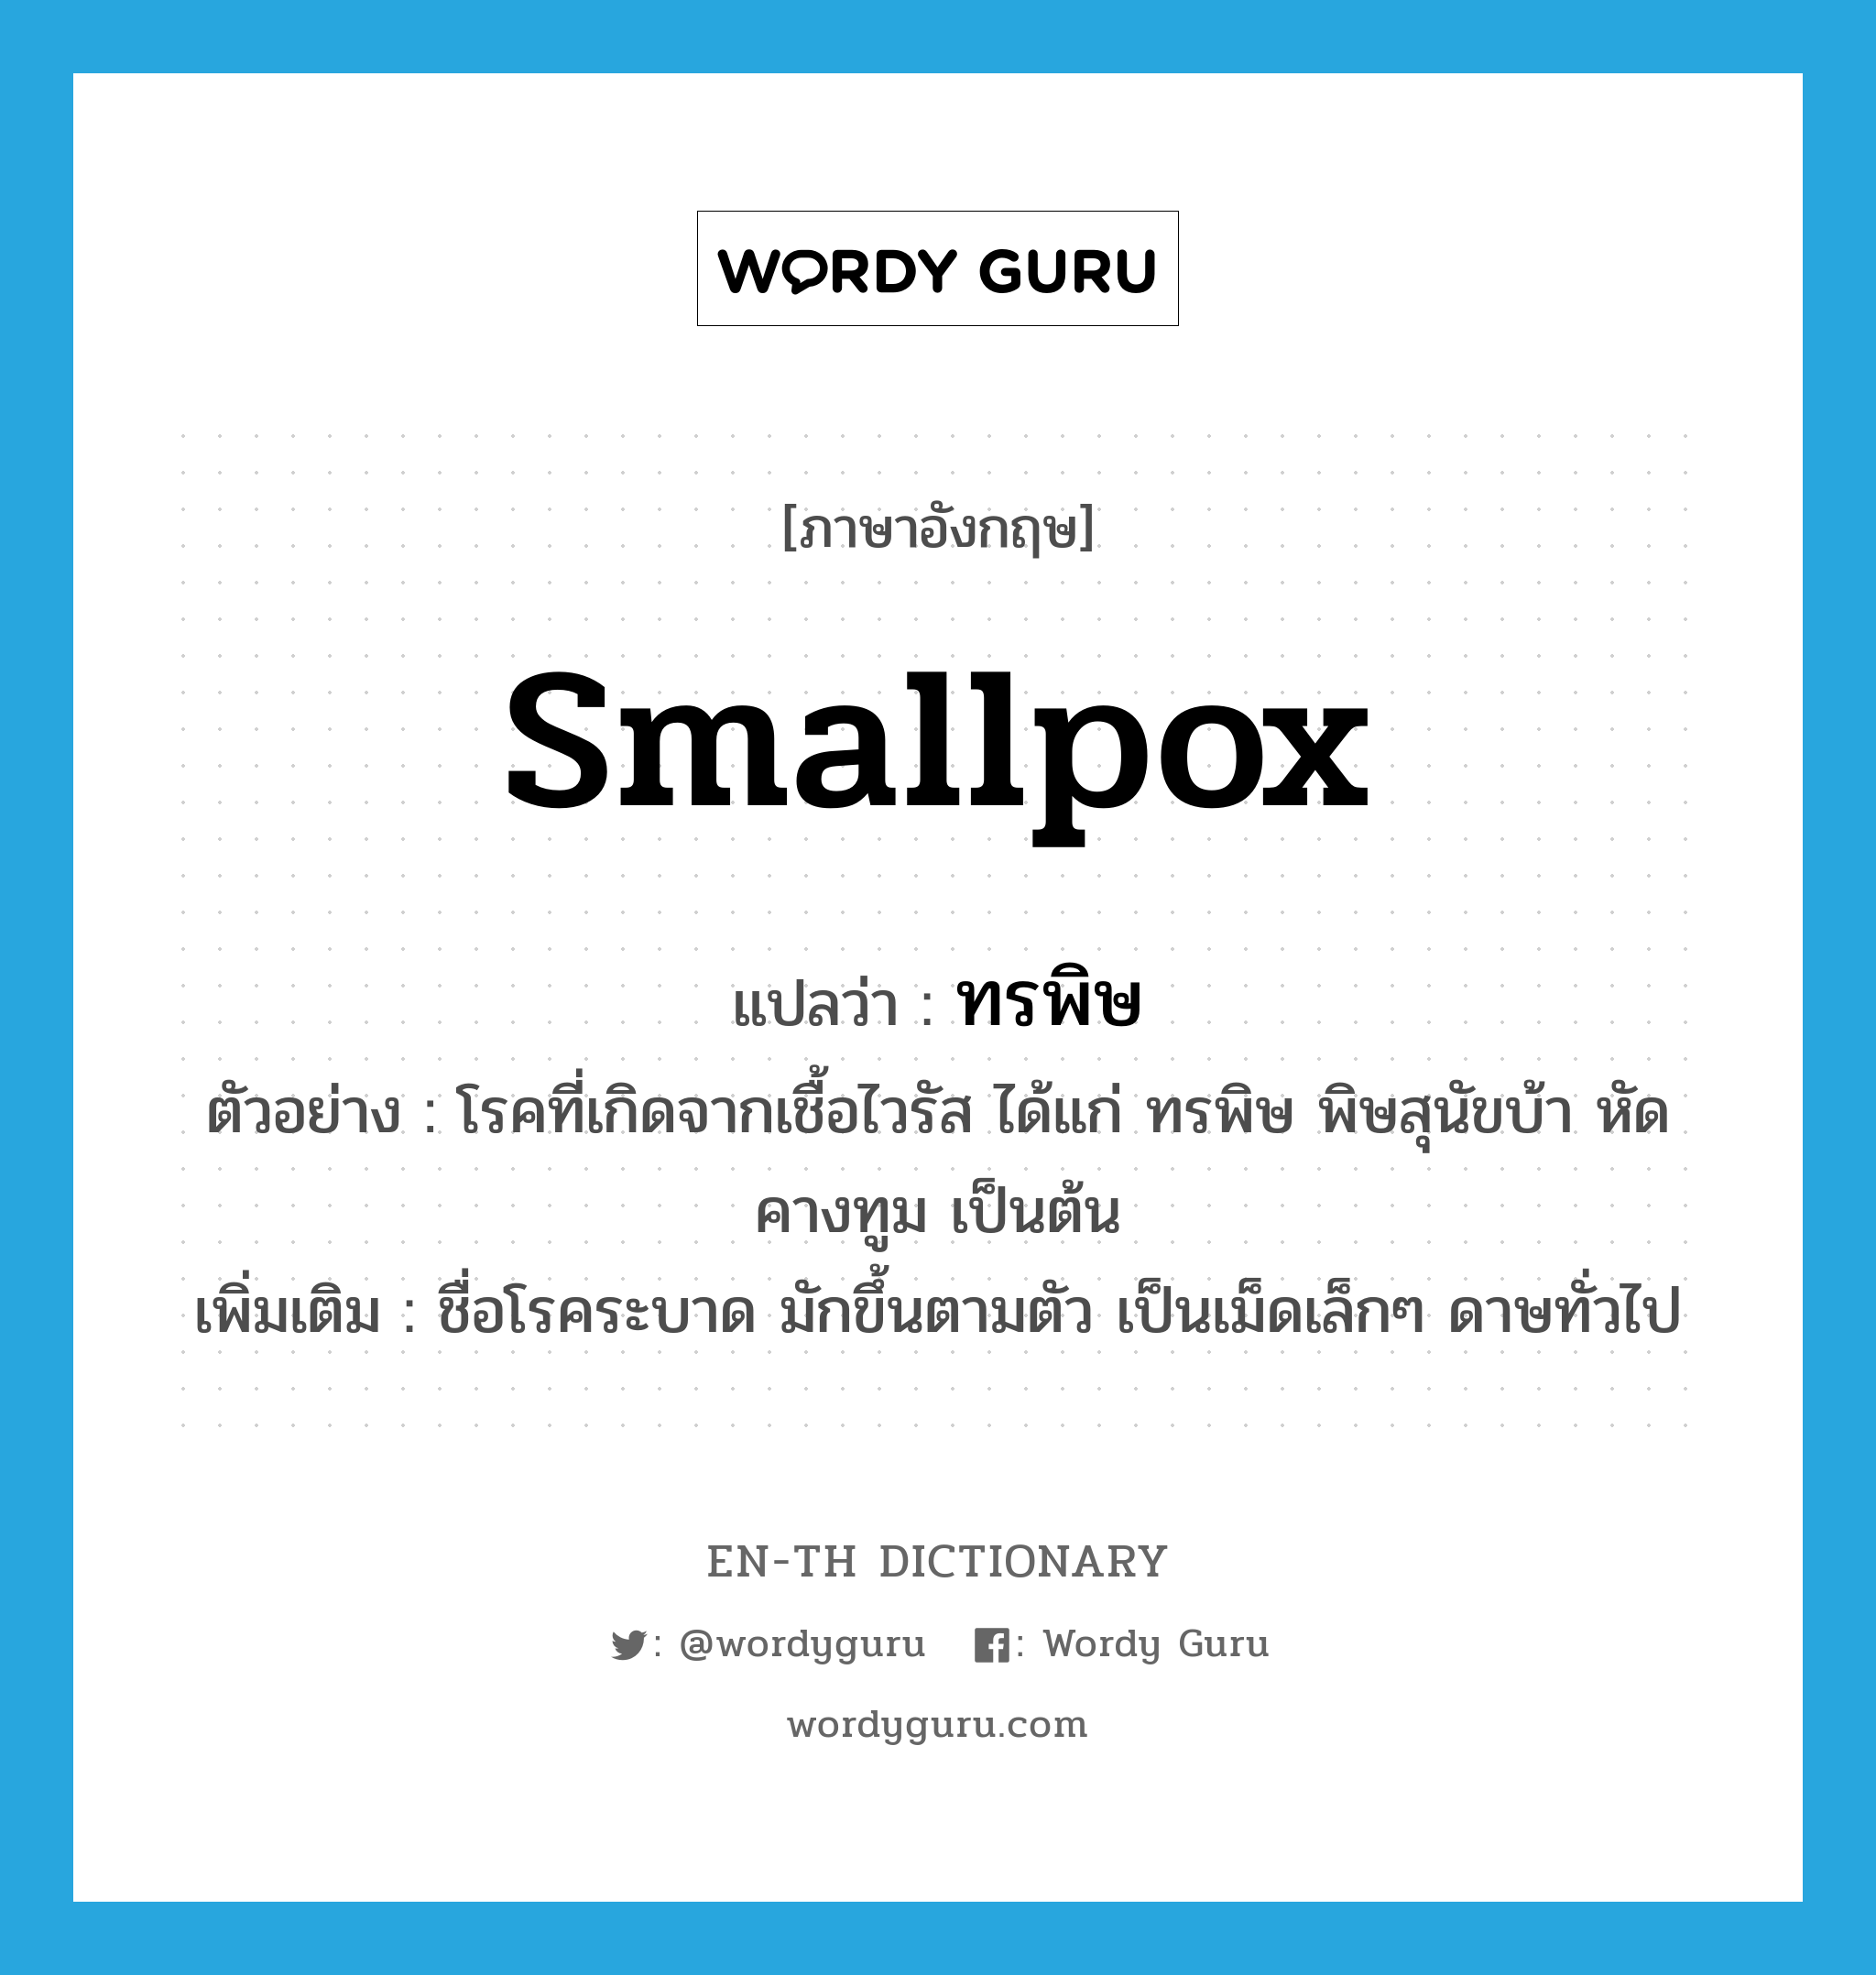 smallpox แปลว่า?, คำศัพท์ภาษาอังกฤษ smallpox แปลว่า ทรพิษ ประเภท N ตัวอย่าง โรคที่เกิดจากเชื้อไวรัส ได้แก่ ทรพิษ พิษสุนัขบ้า หัด คางทูม เป็นต้น เพิ่มเติม ชื่อโรคระบาด มักขึ้นตามตัว เป็นเม็ดเล็กๆ ดาษทั่วไป หมวด N